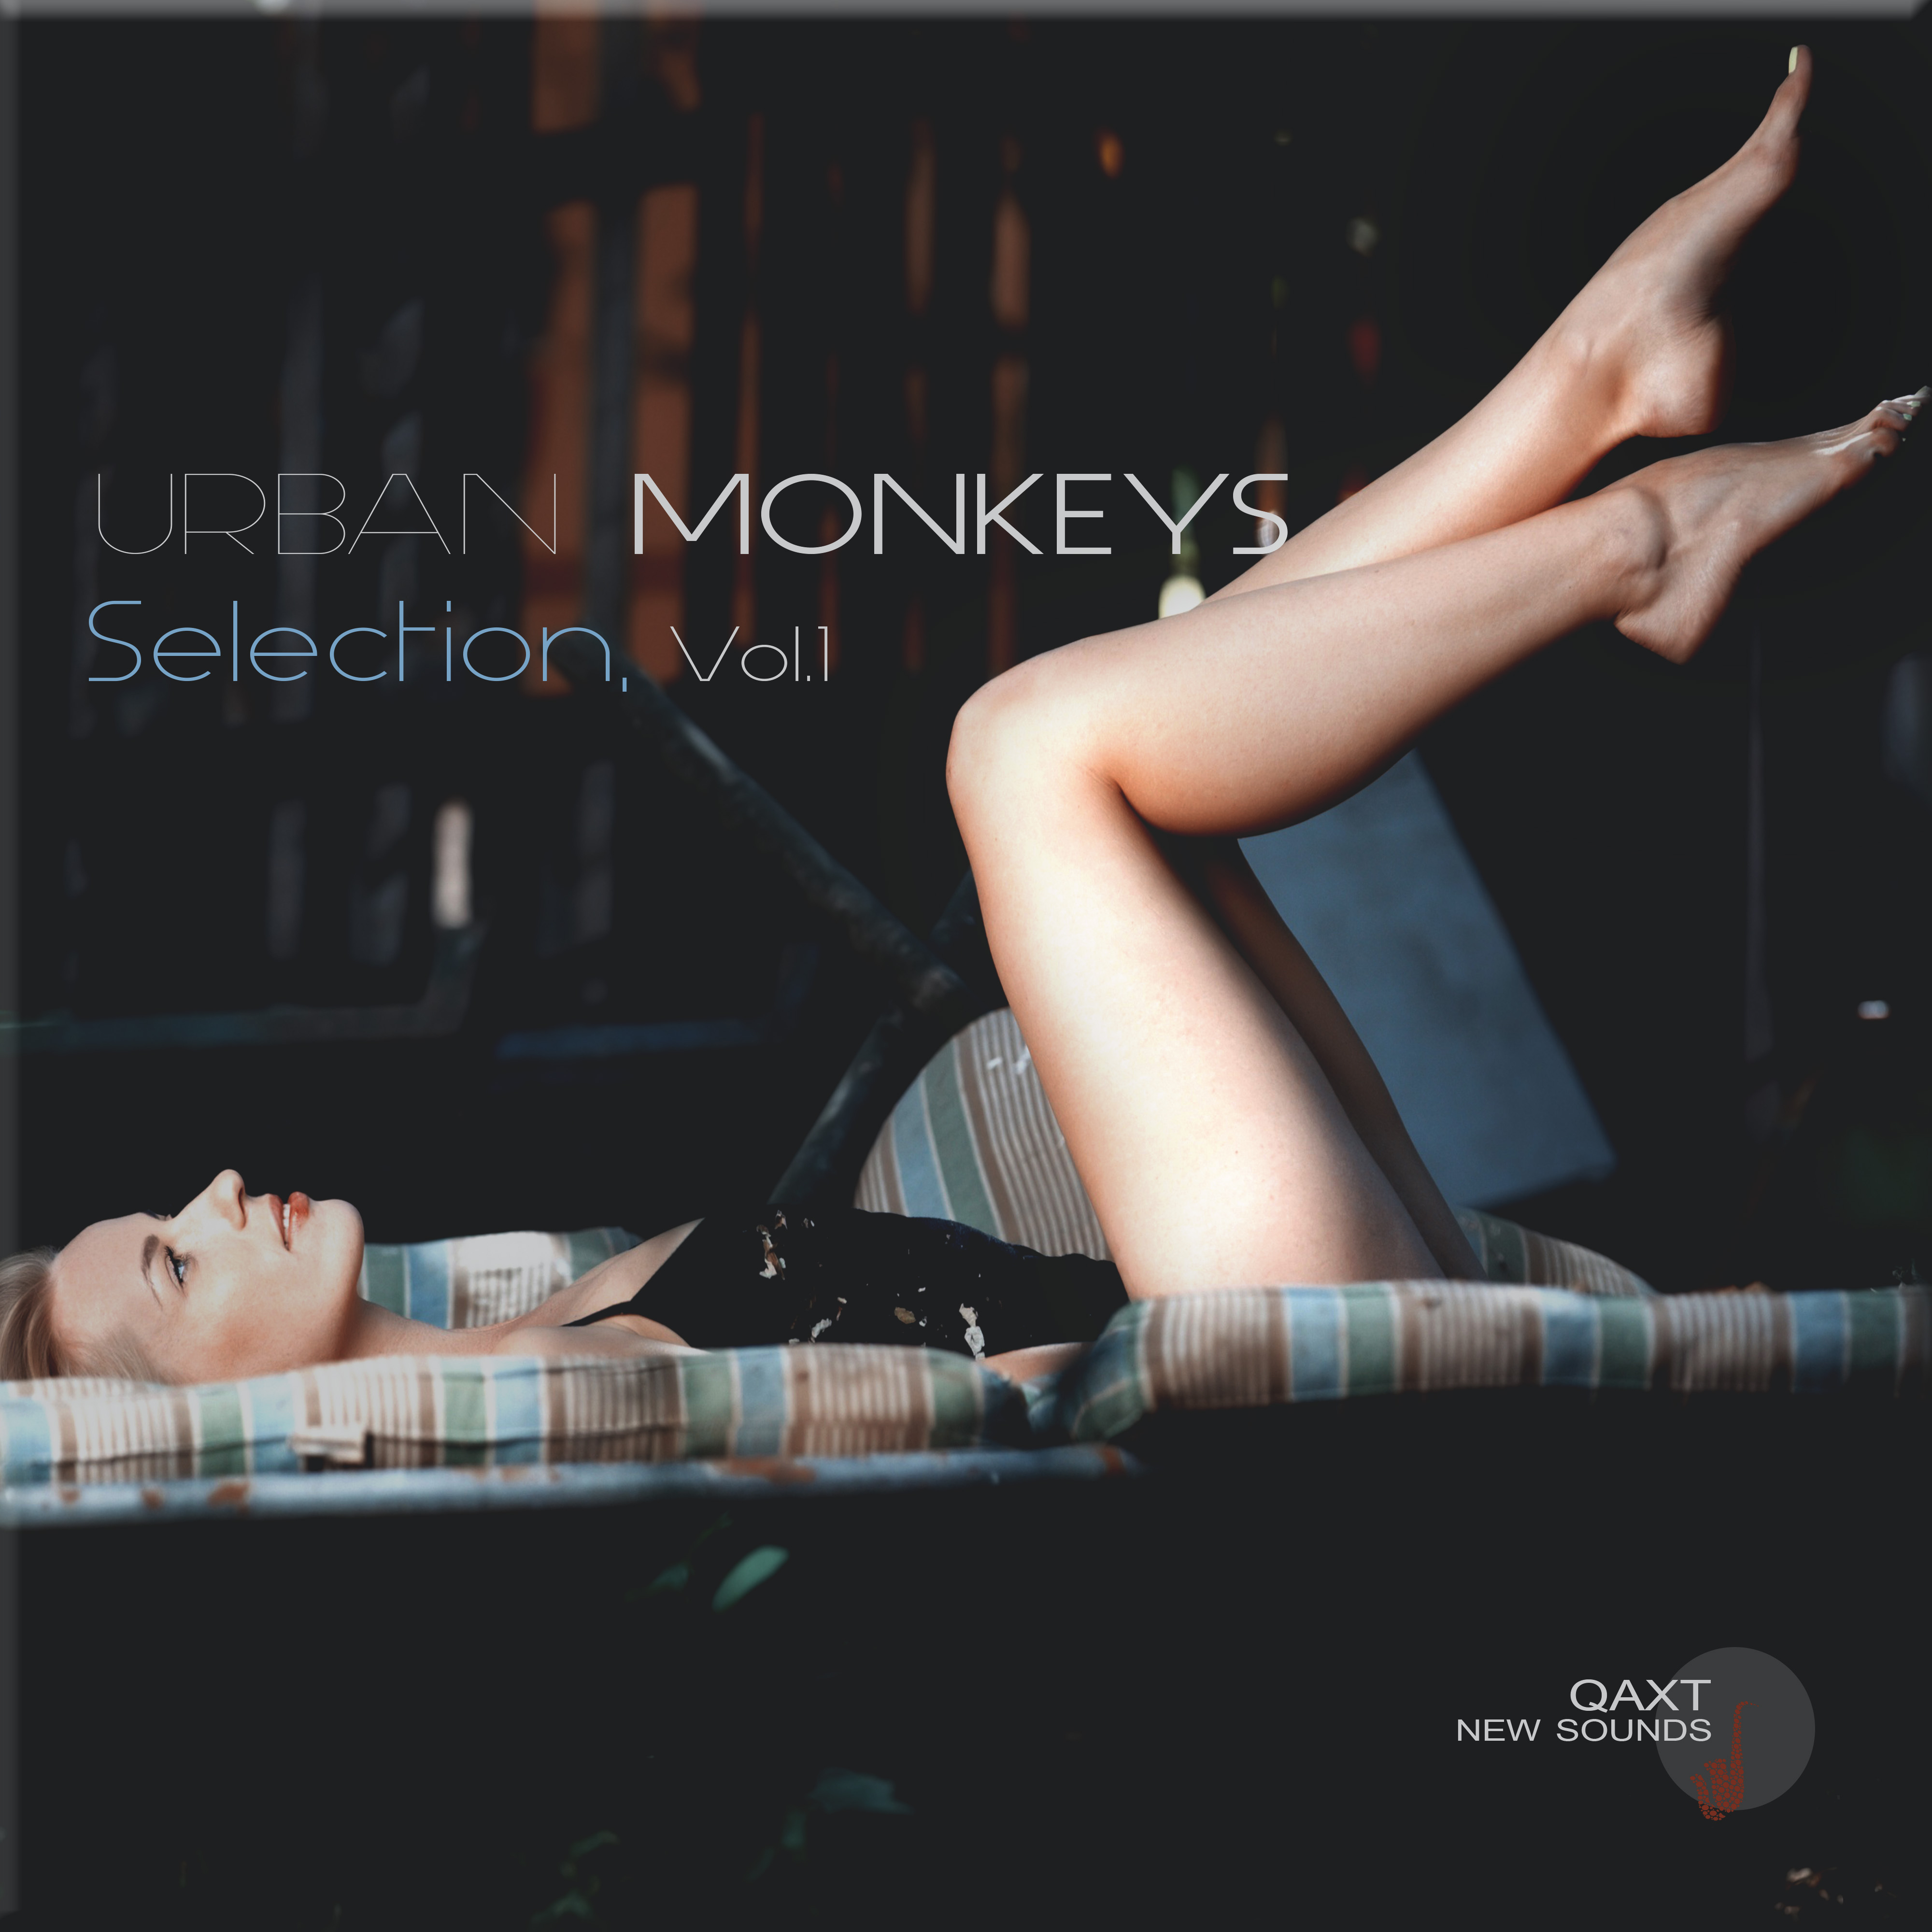 Urban Monkeys Selection, Vol. 1 (QAXT New Sounds)